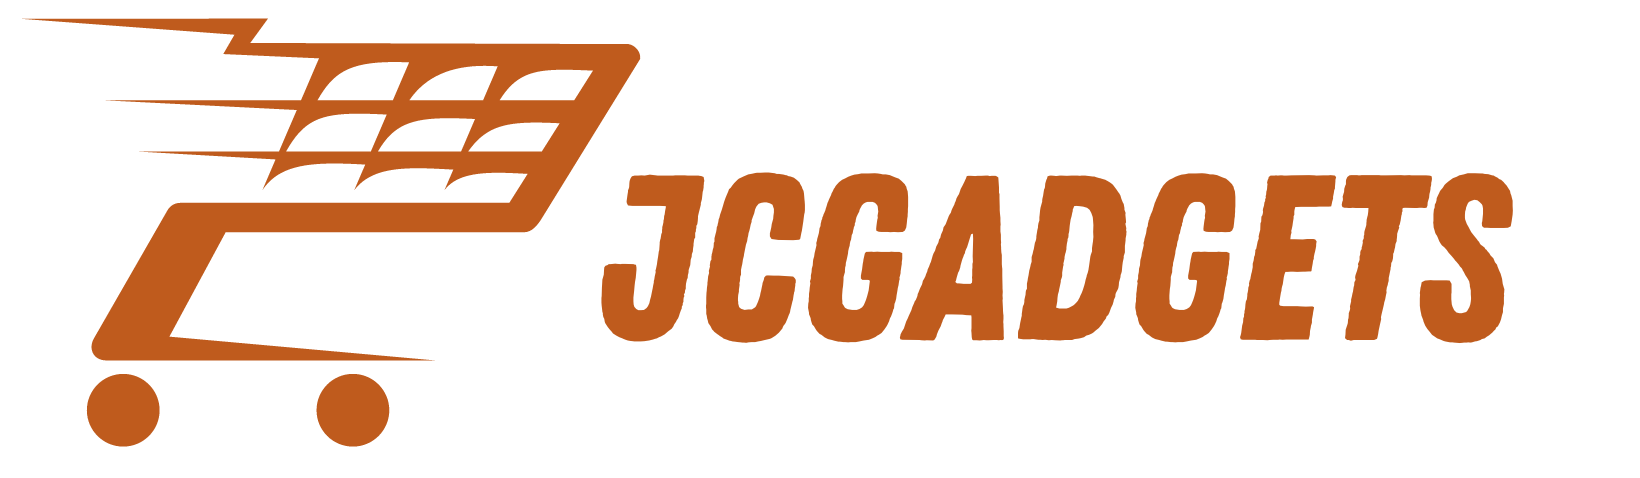 jcgadgets